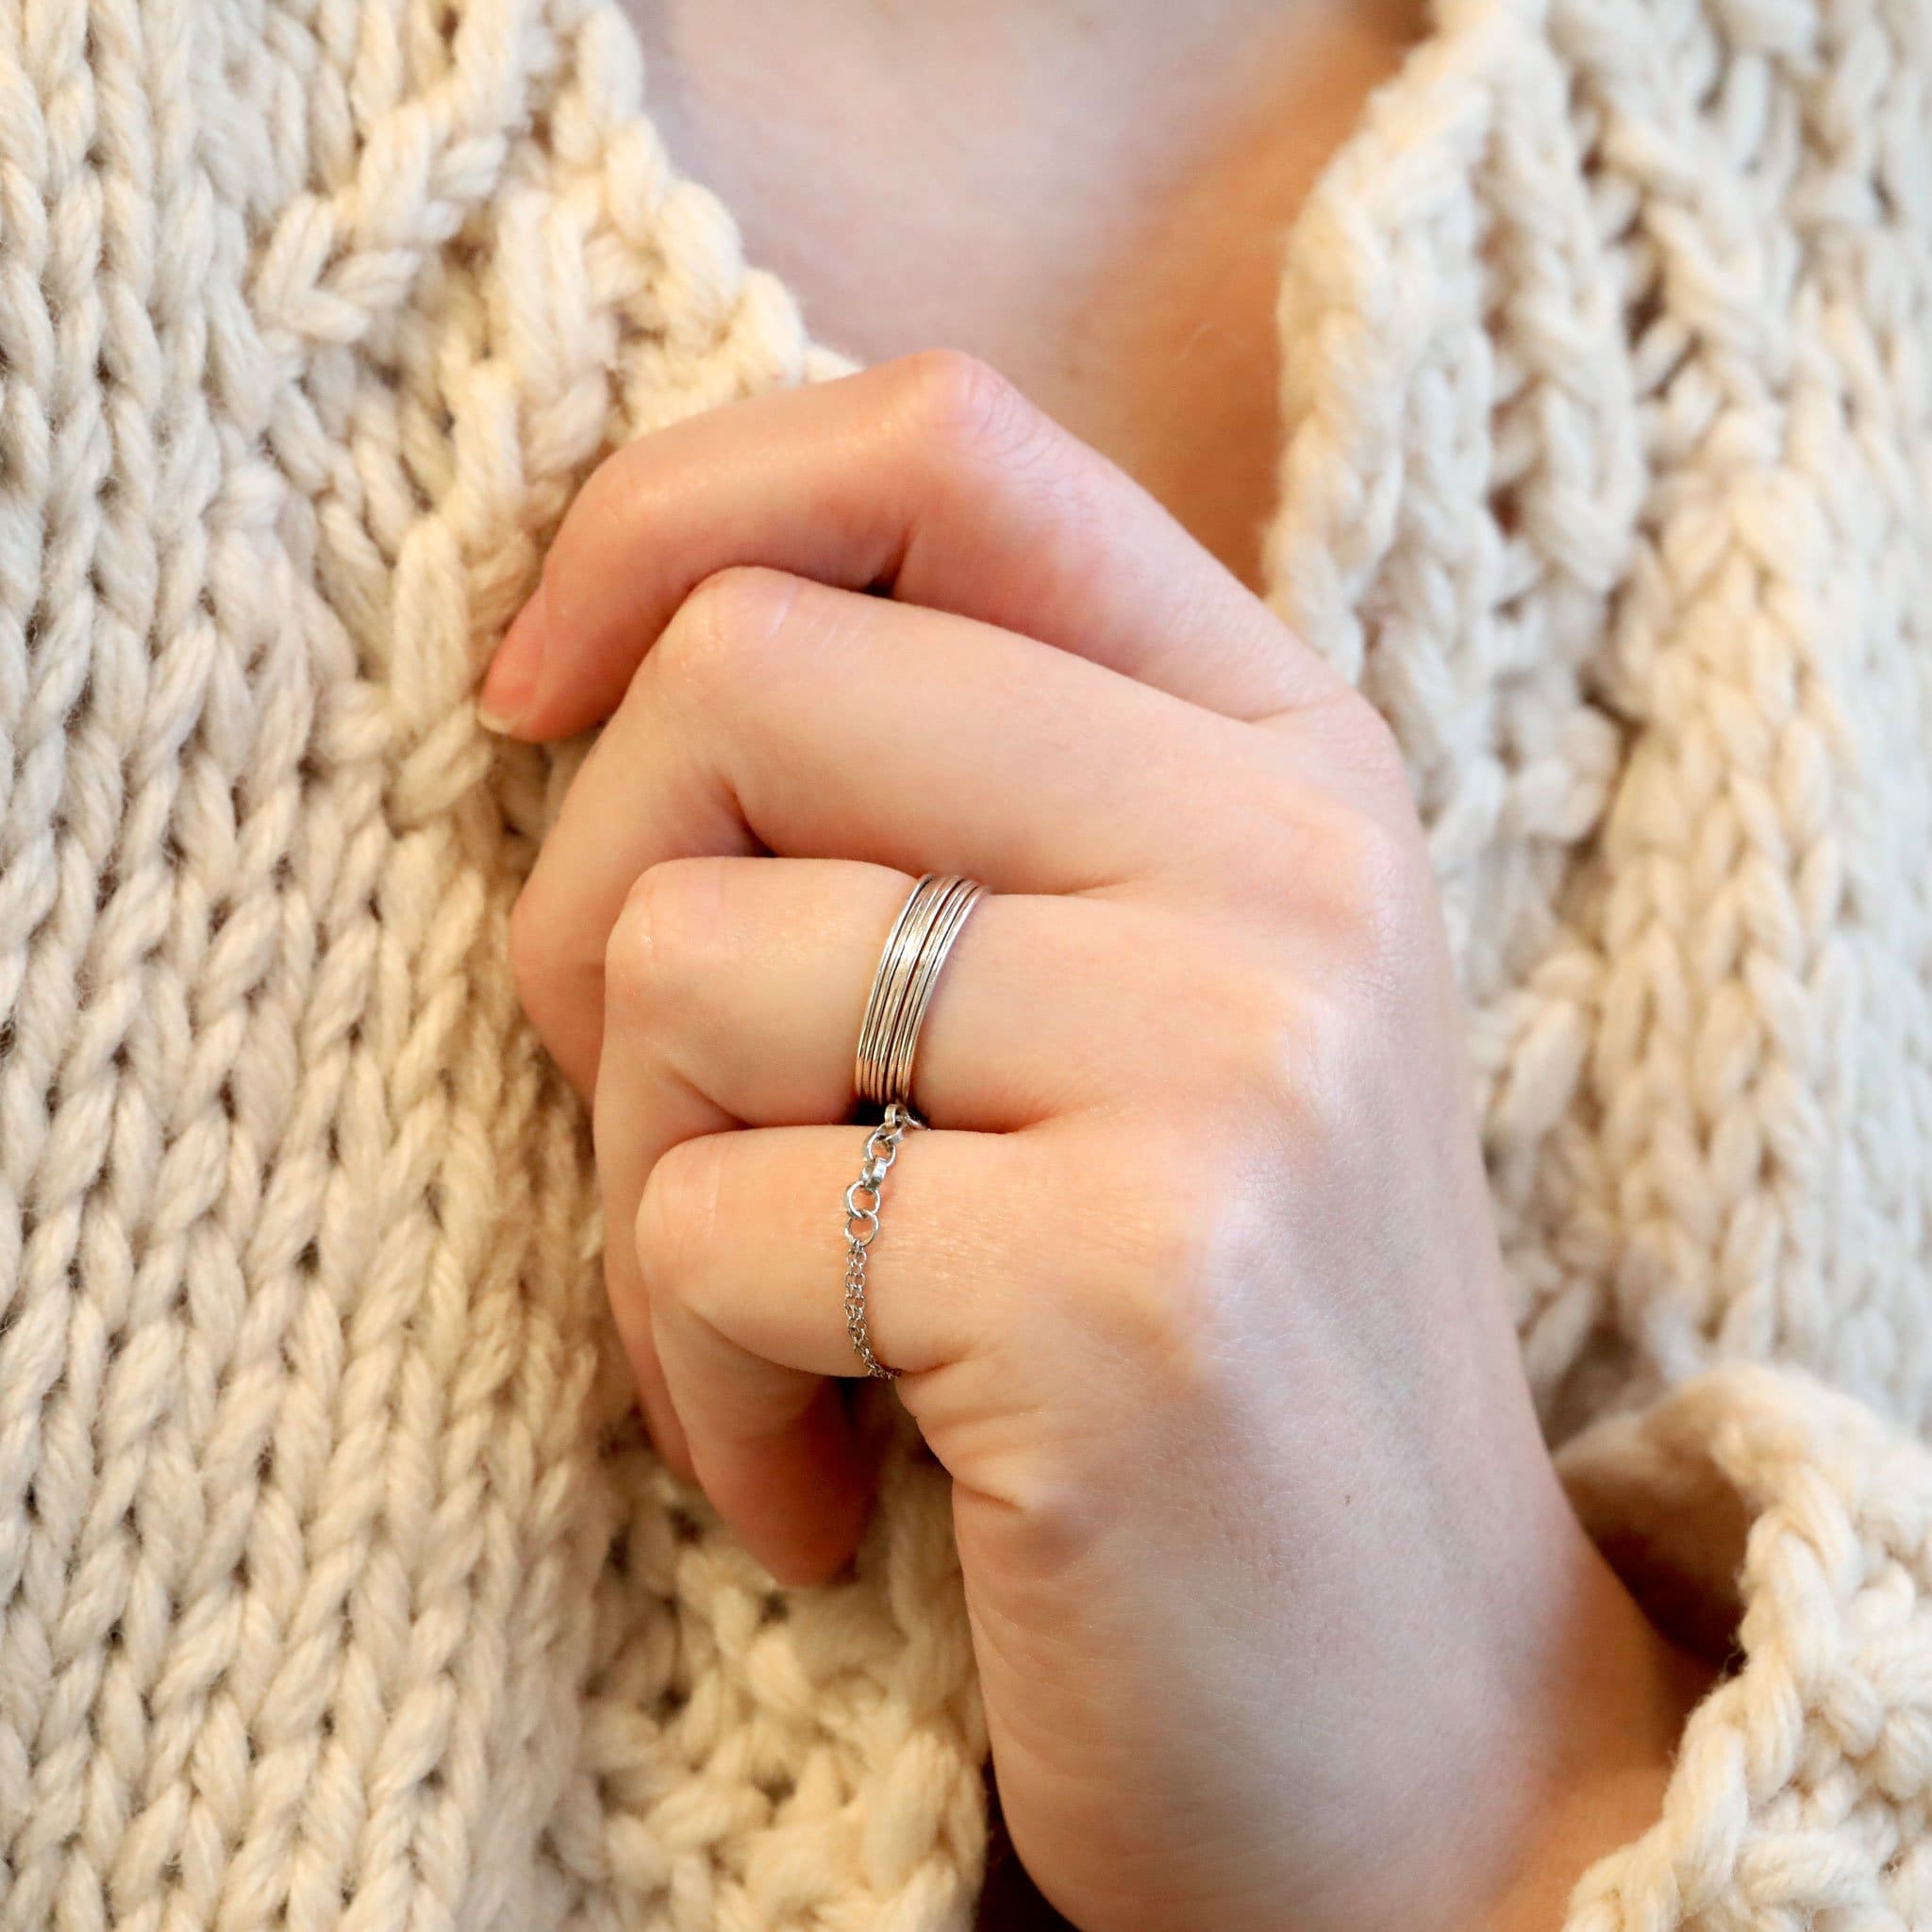 Crochet knitting rings sterling silver